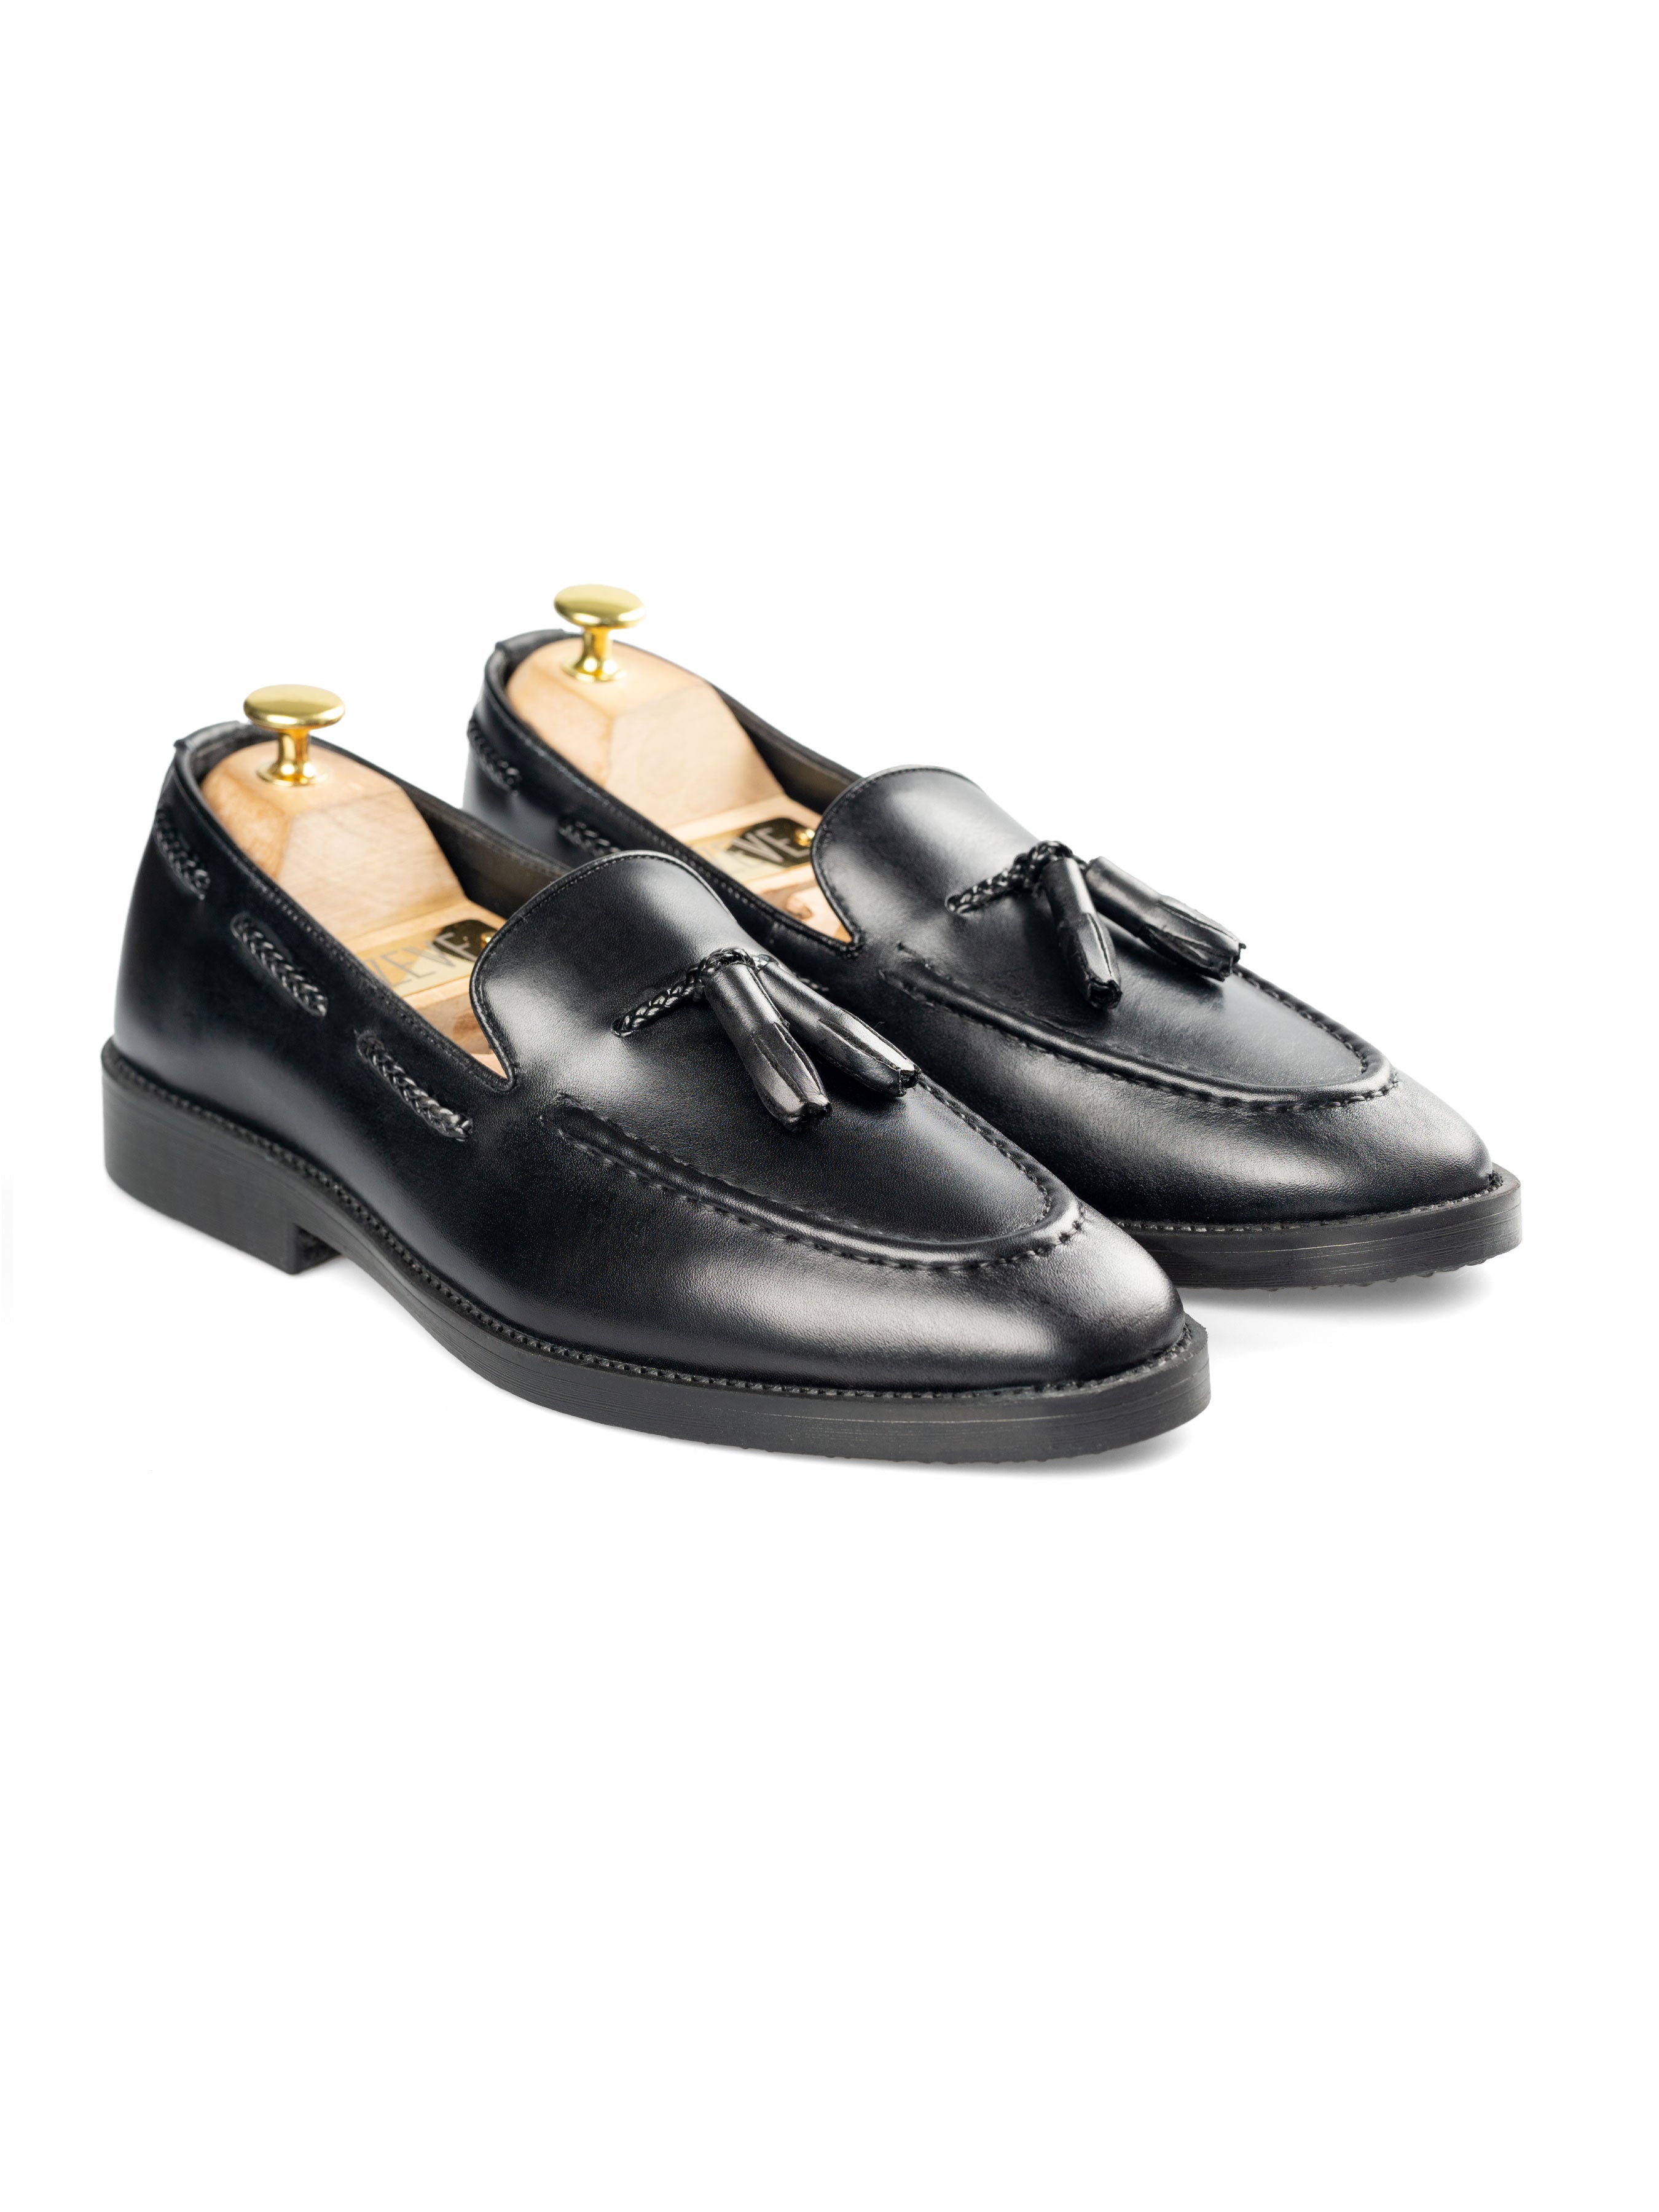 Tassel Loafer - Black Leather (Crepe Sole) - Zeve Shoes